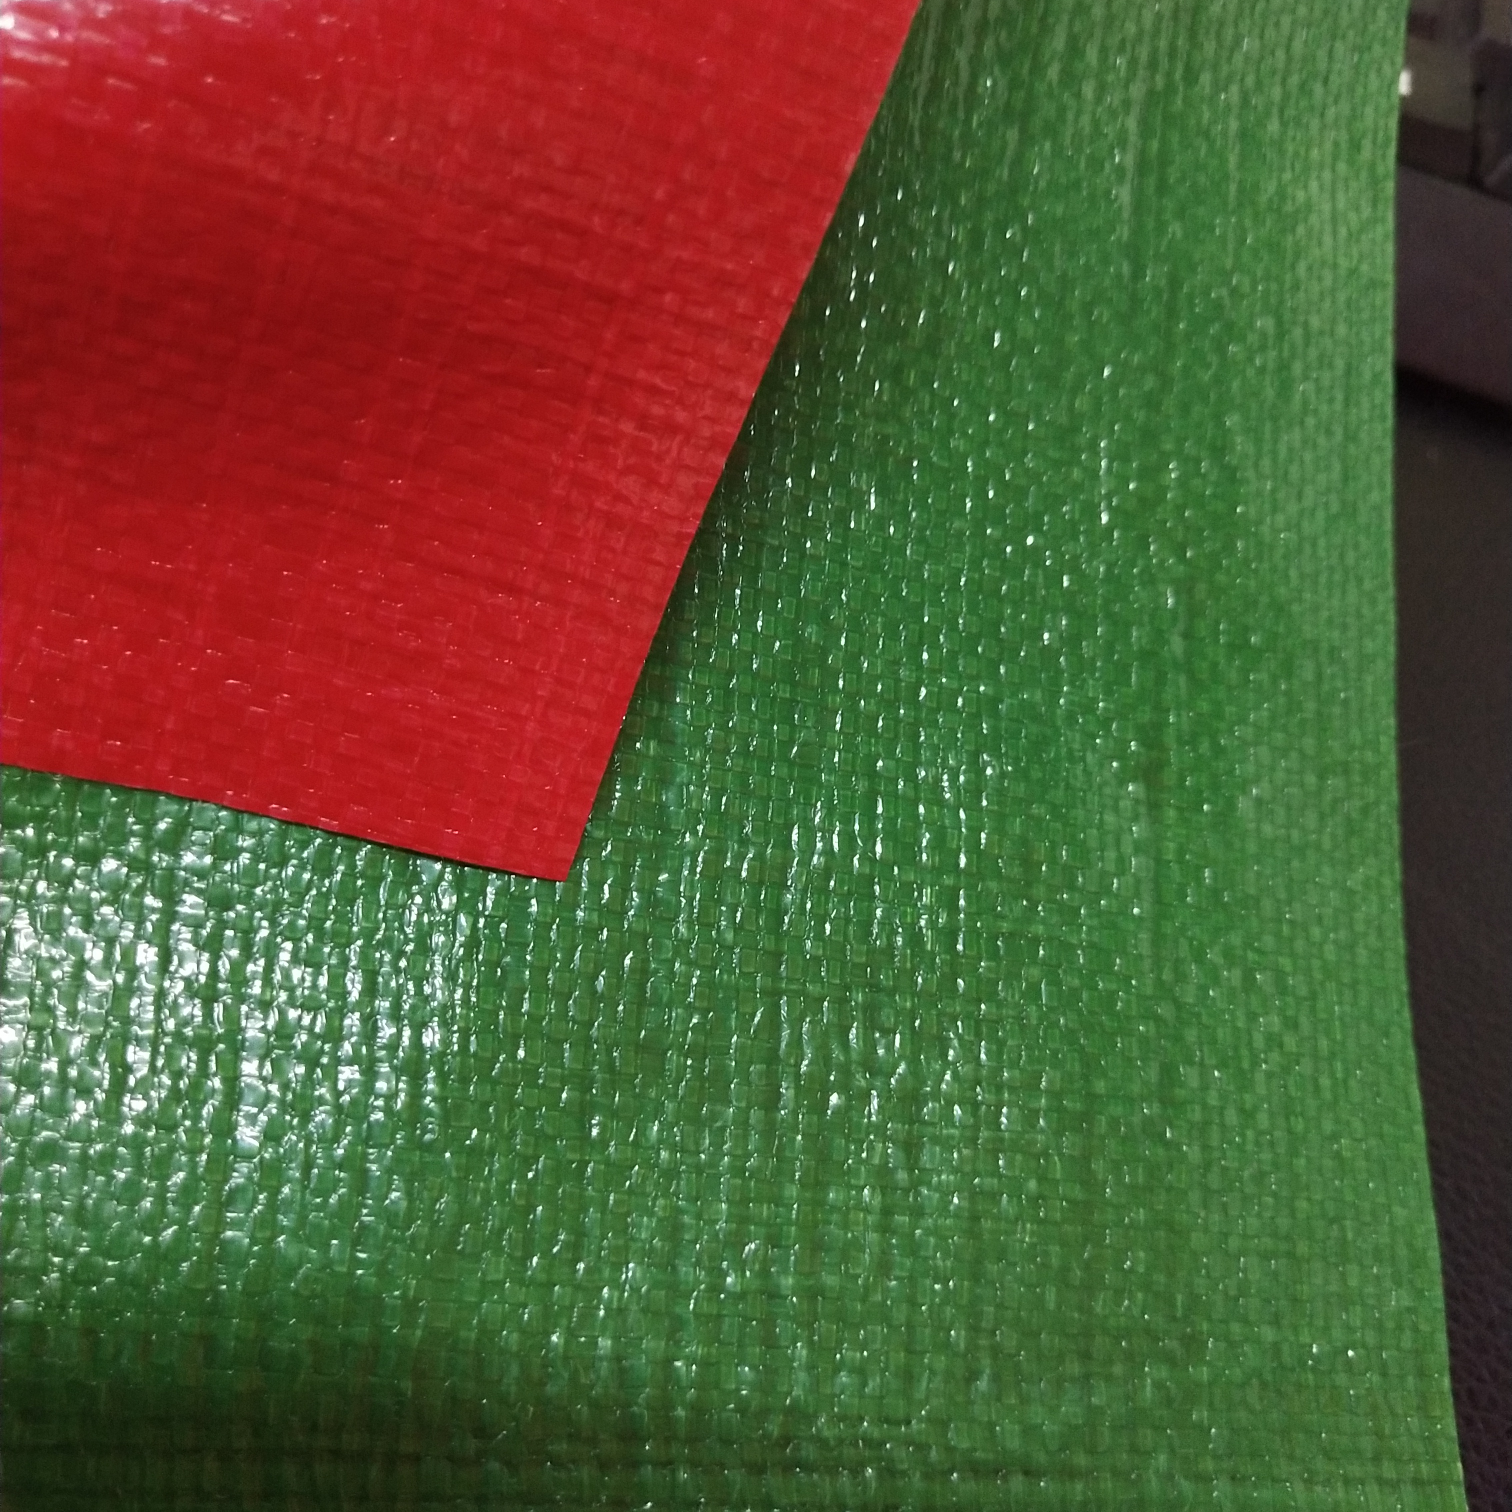 双面淋膜230克绿红PE防水布  塑料编织布  适用于花房篷布 汽车篷布 帐篷底布 各种手提袋  收纳箱专用面料